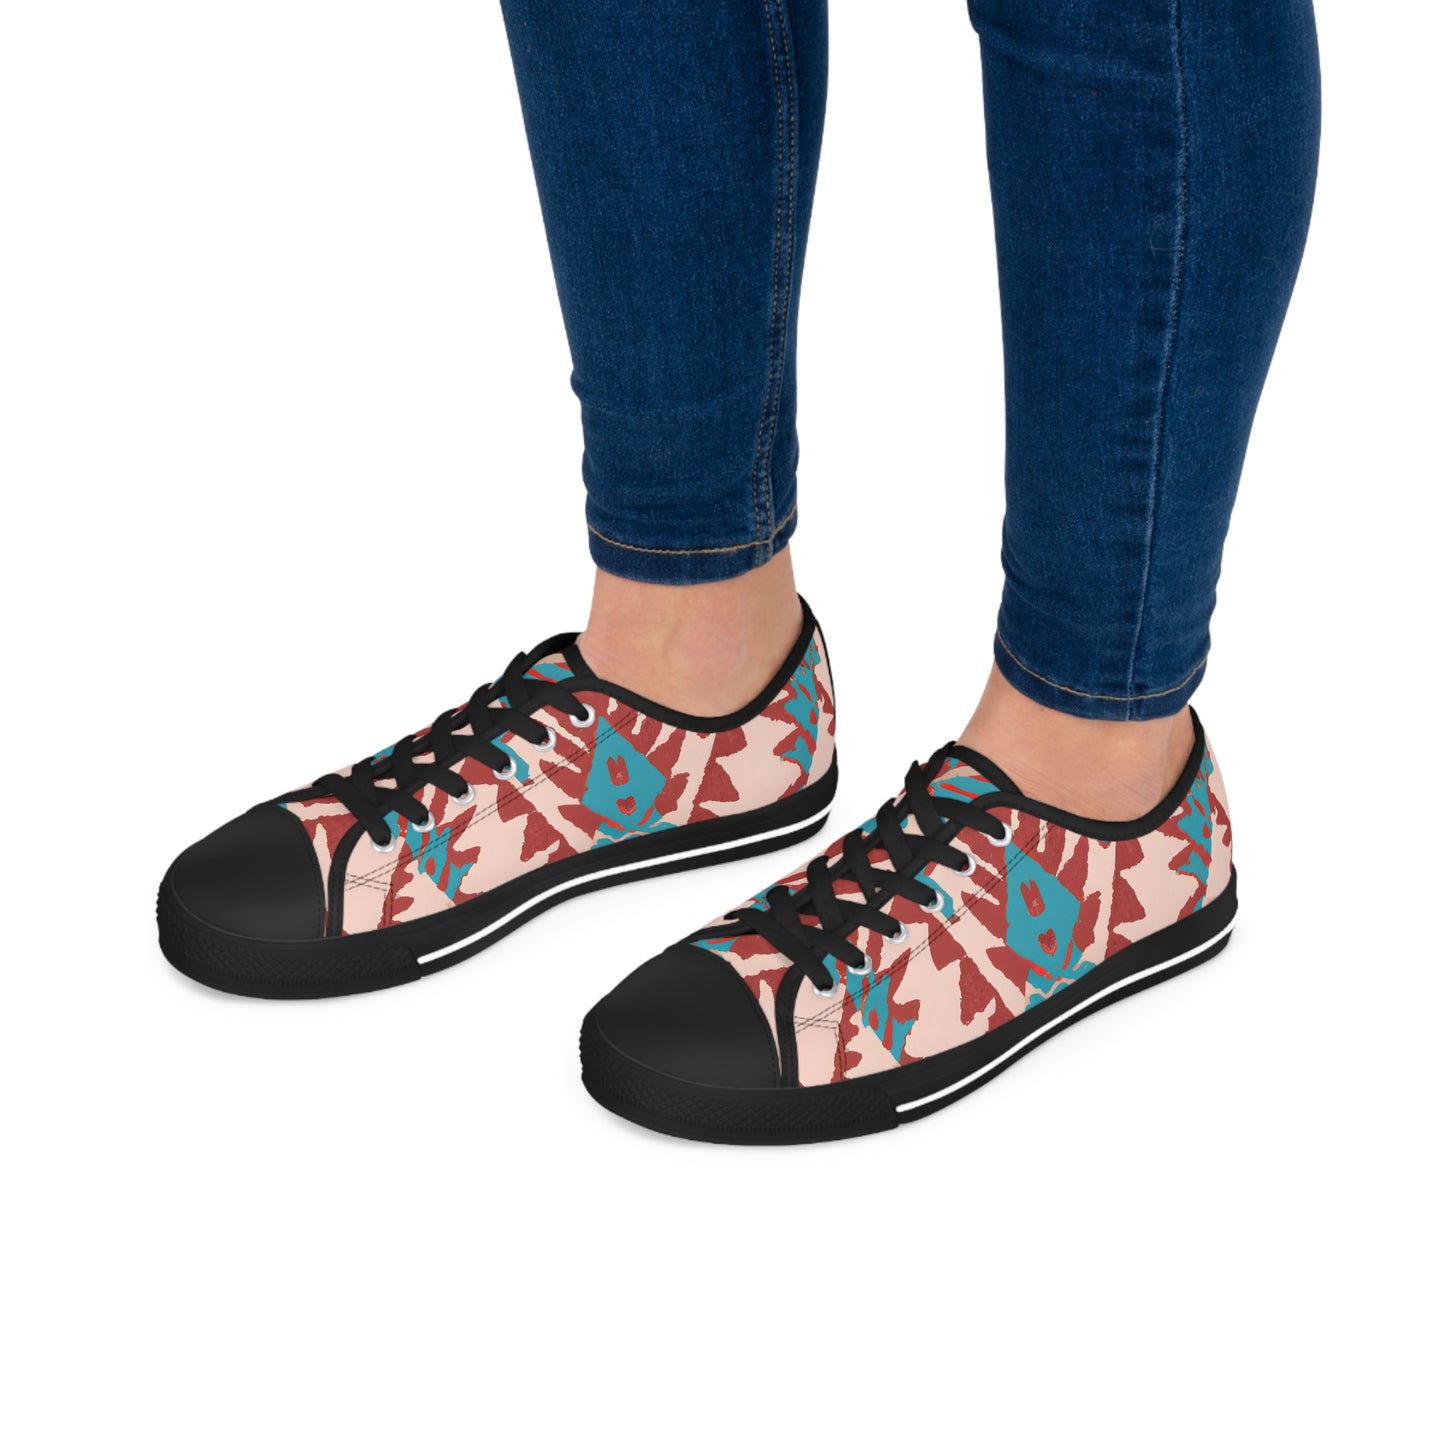 Nativa Donald - Women's Low-Top Sneakers